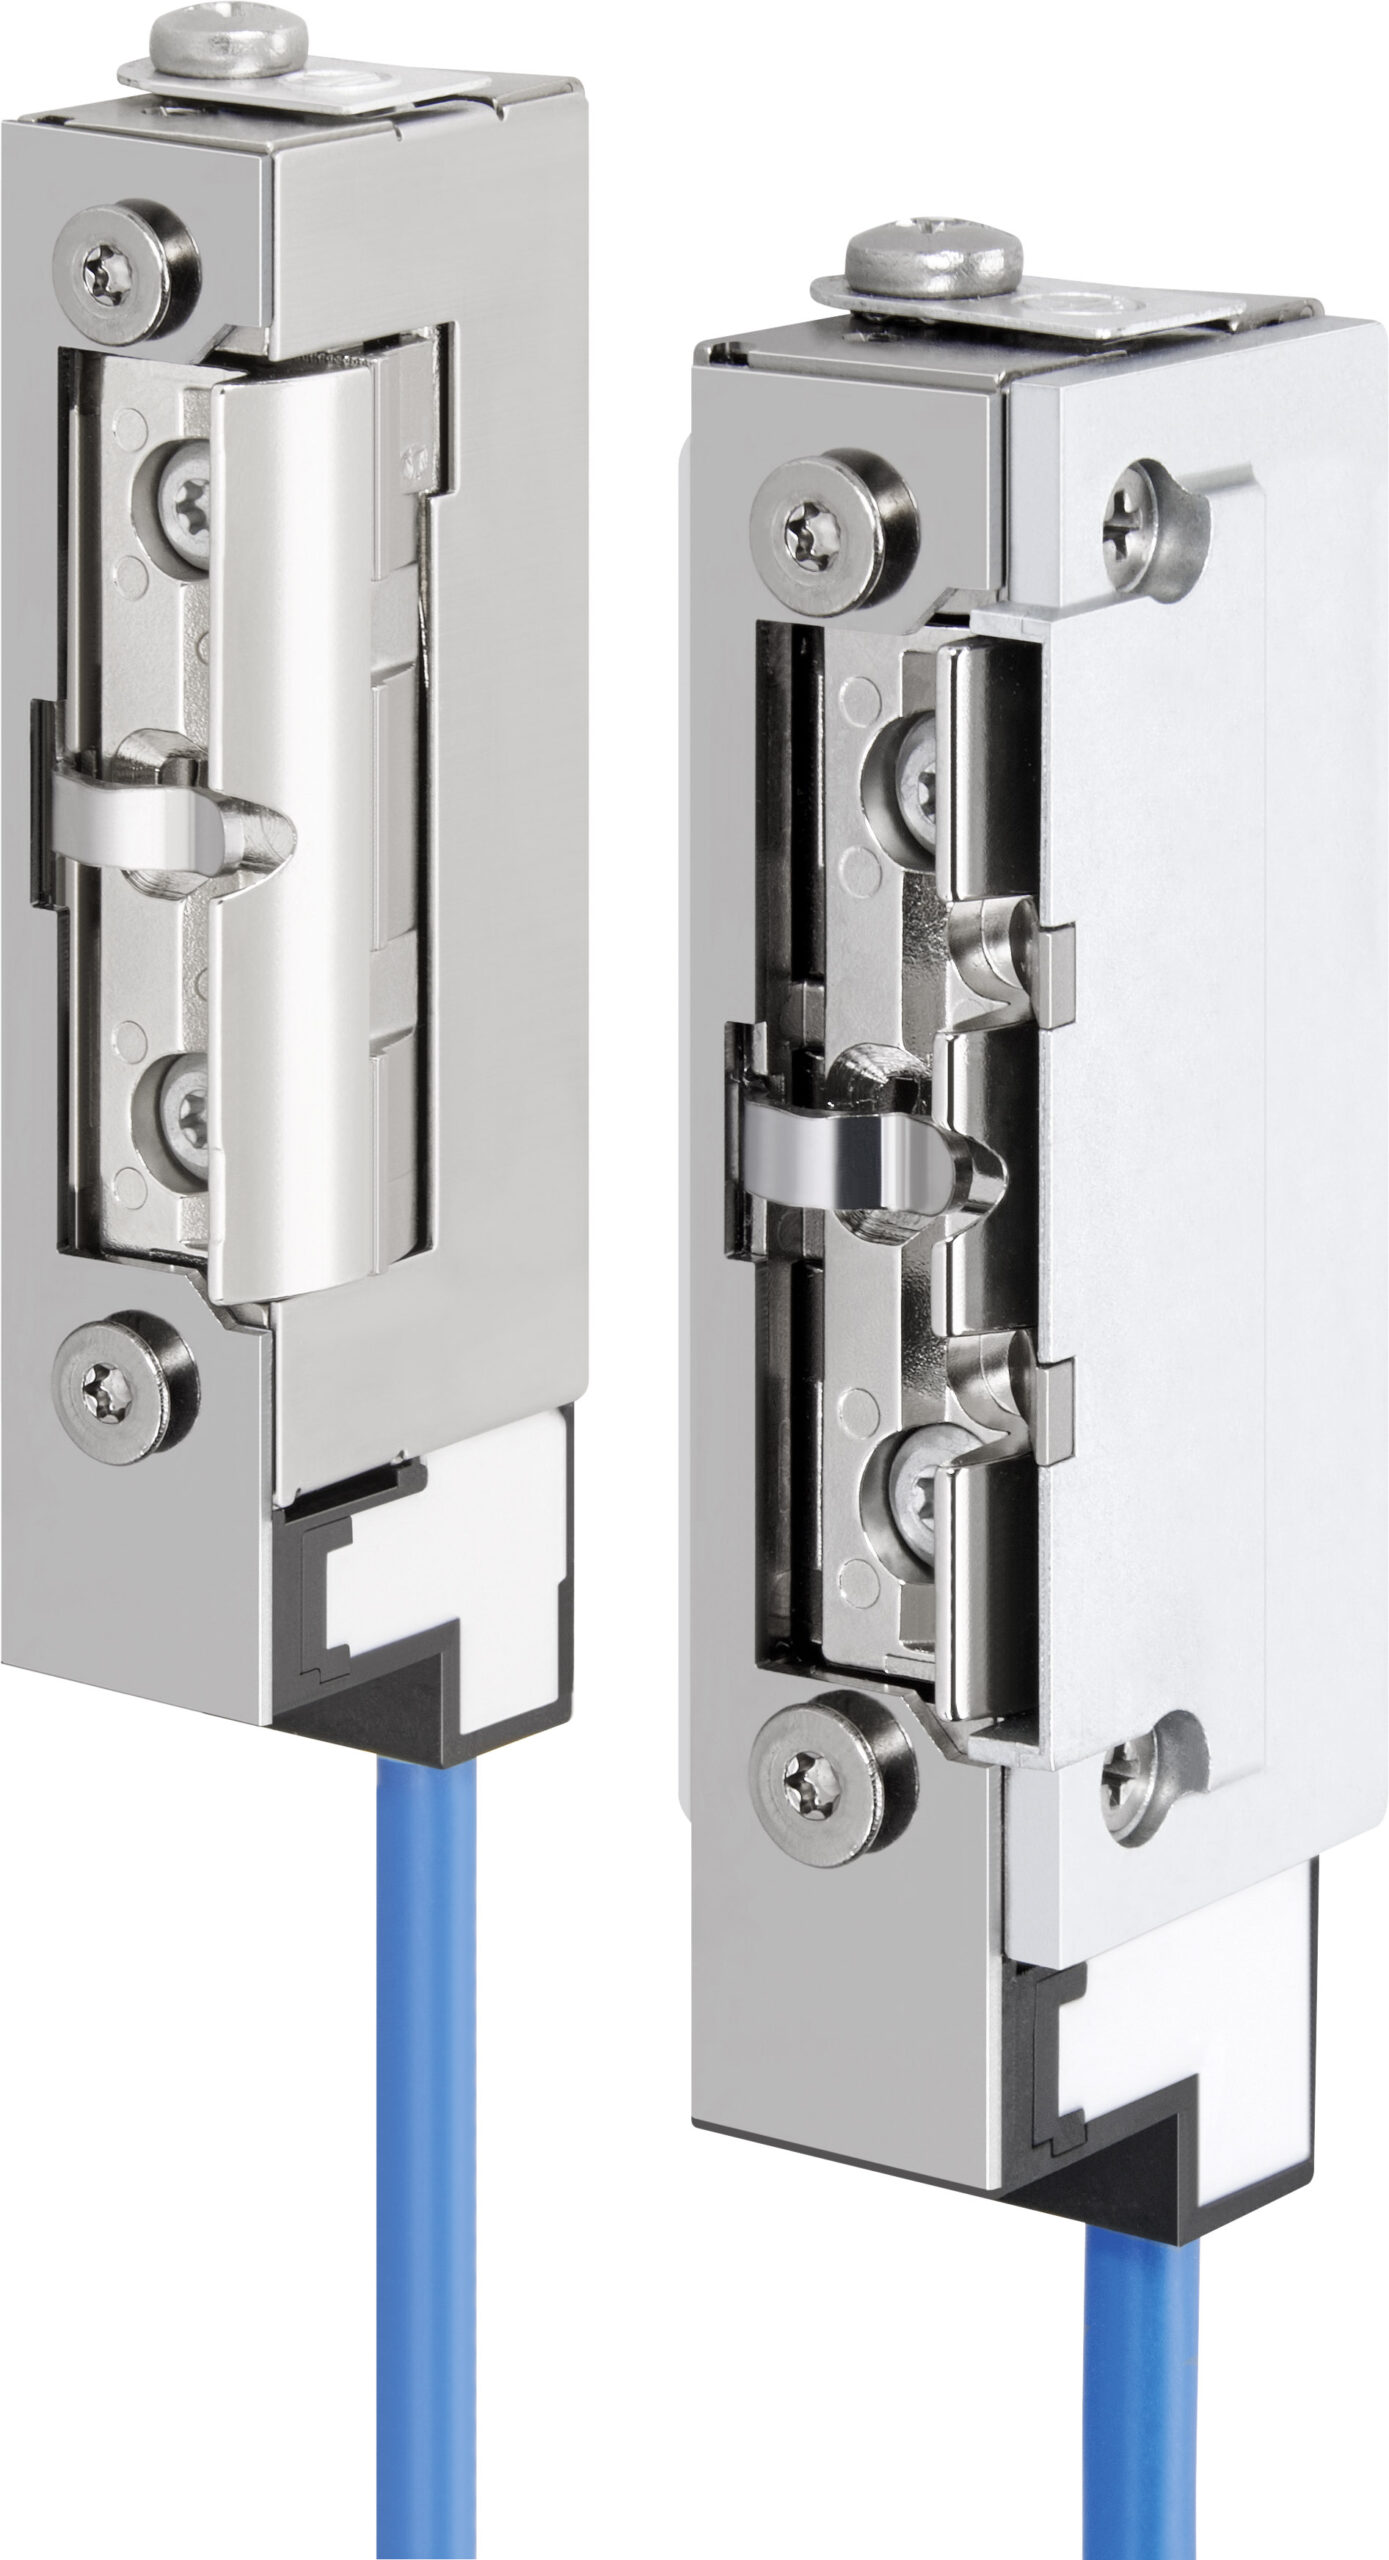 Als einziger Hersteller der Branche bietet die ASSA ABLOY Sicherheitstechnik GmbH auch elektrische Türöffner für explosionsgefährdete Bereiche (EX-Bereiche)